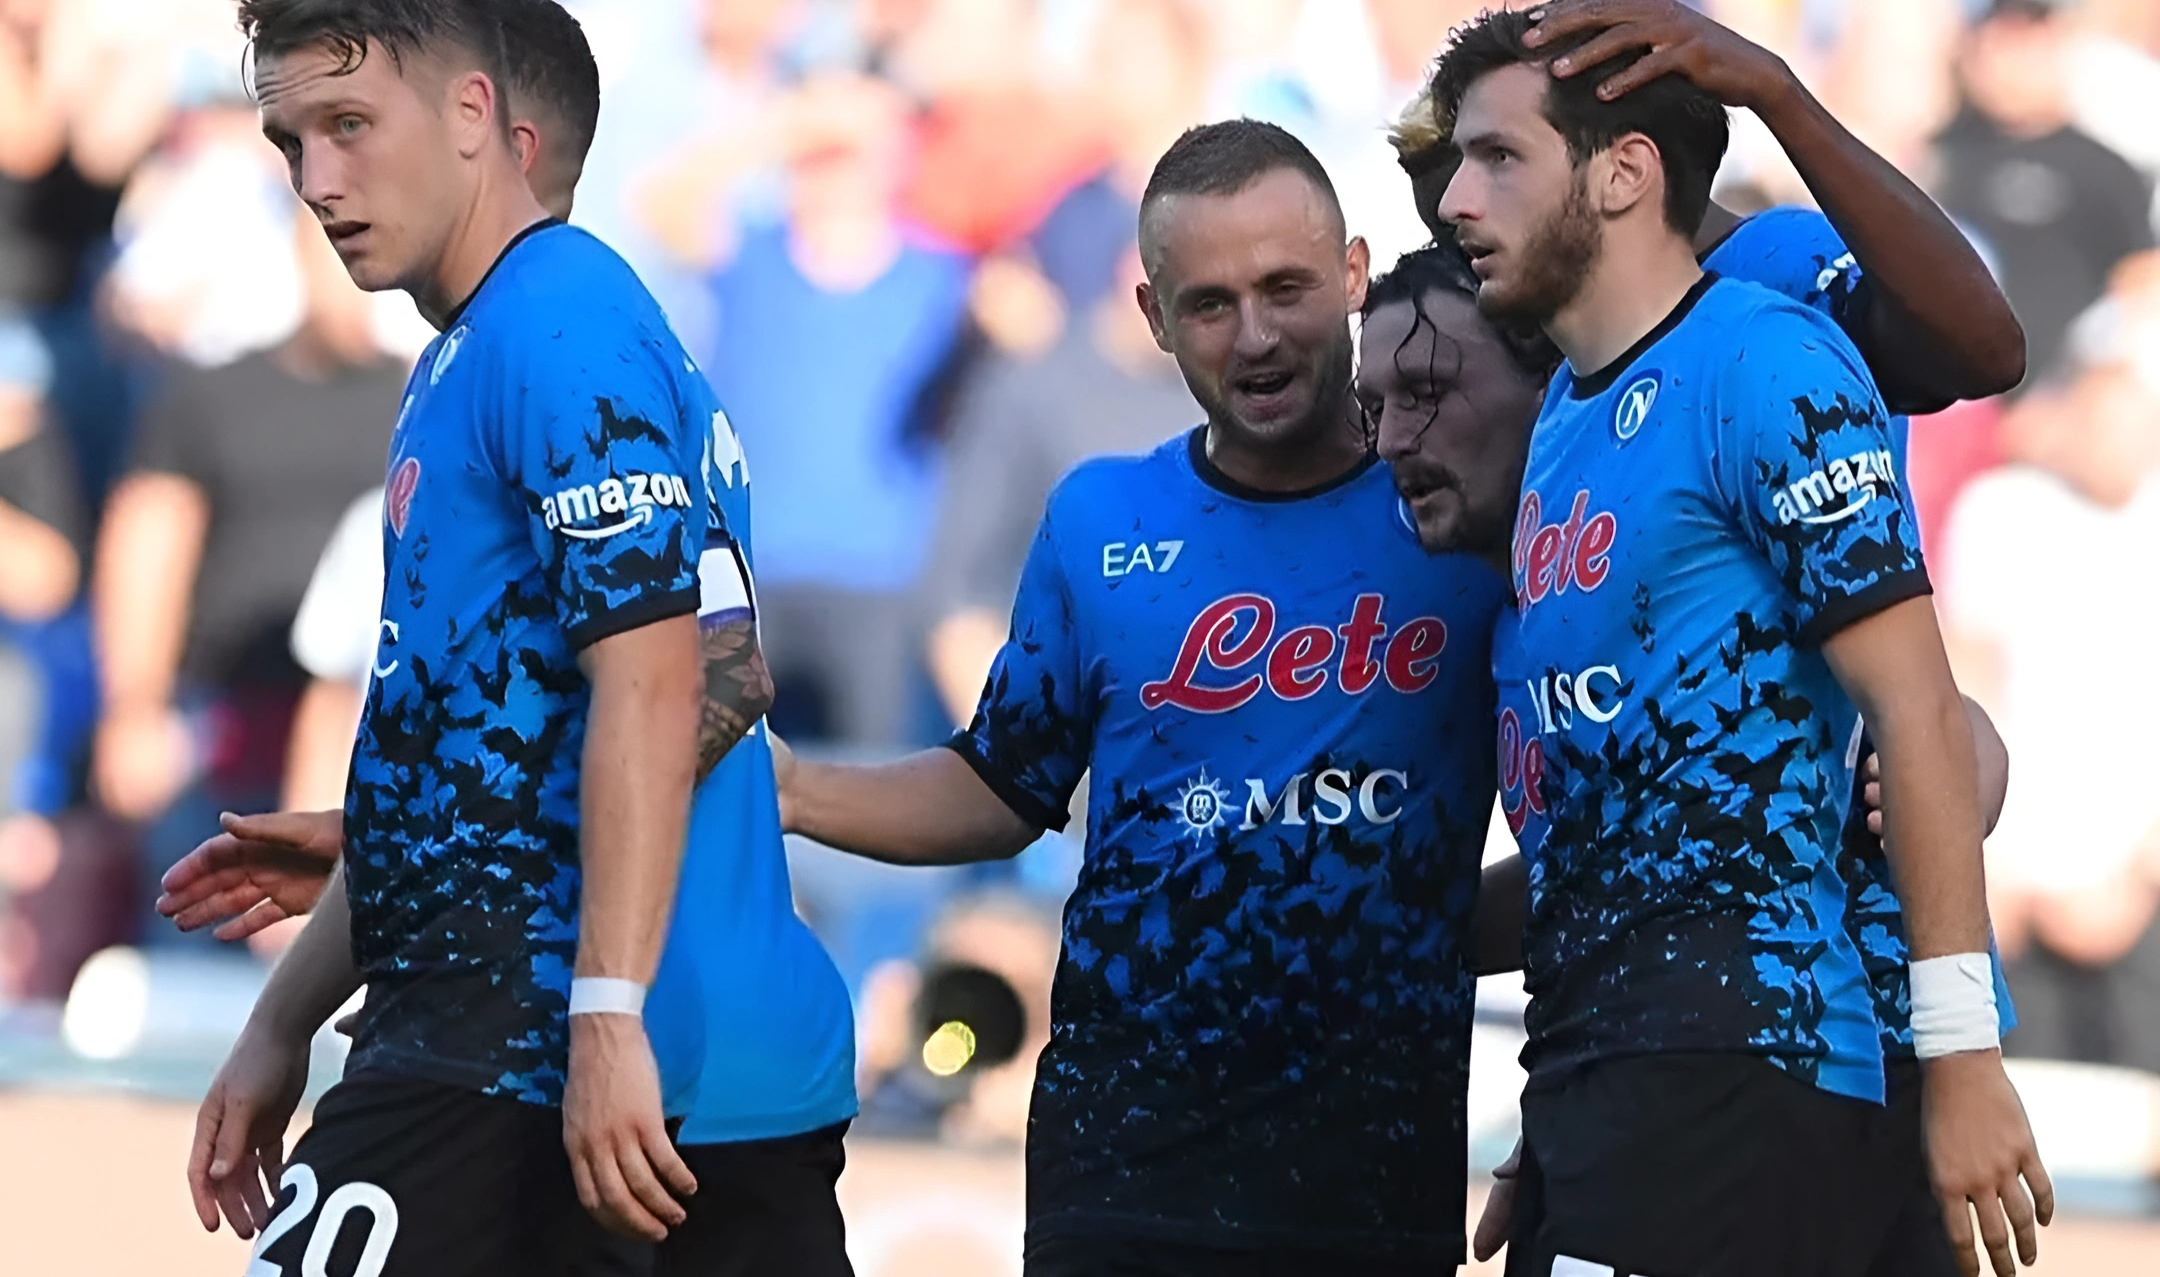 Calciatori del Napoli esultano dopo una vittoria